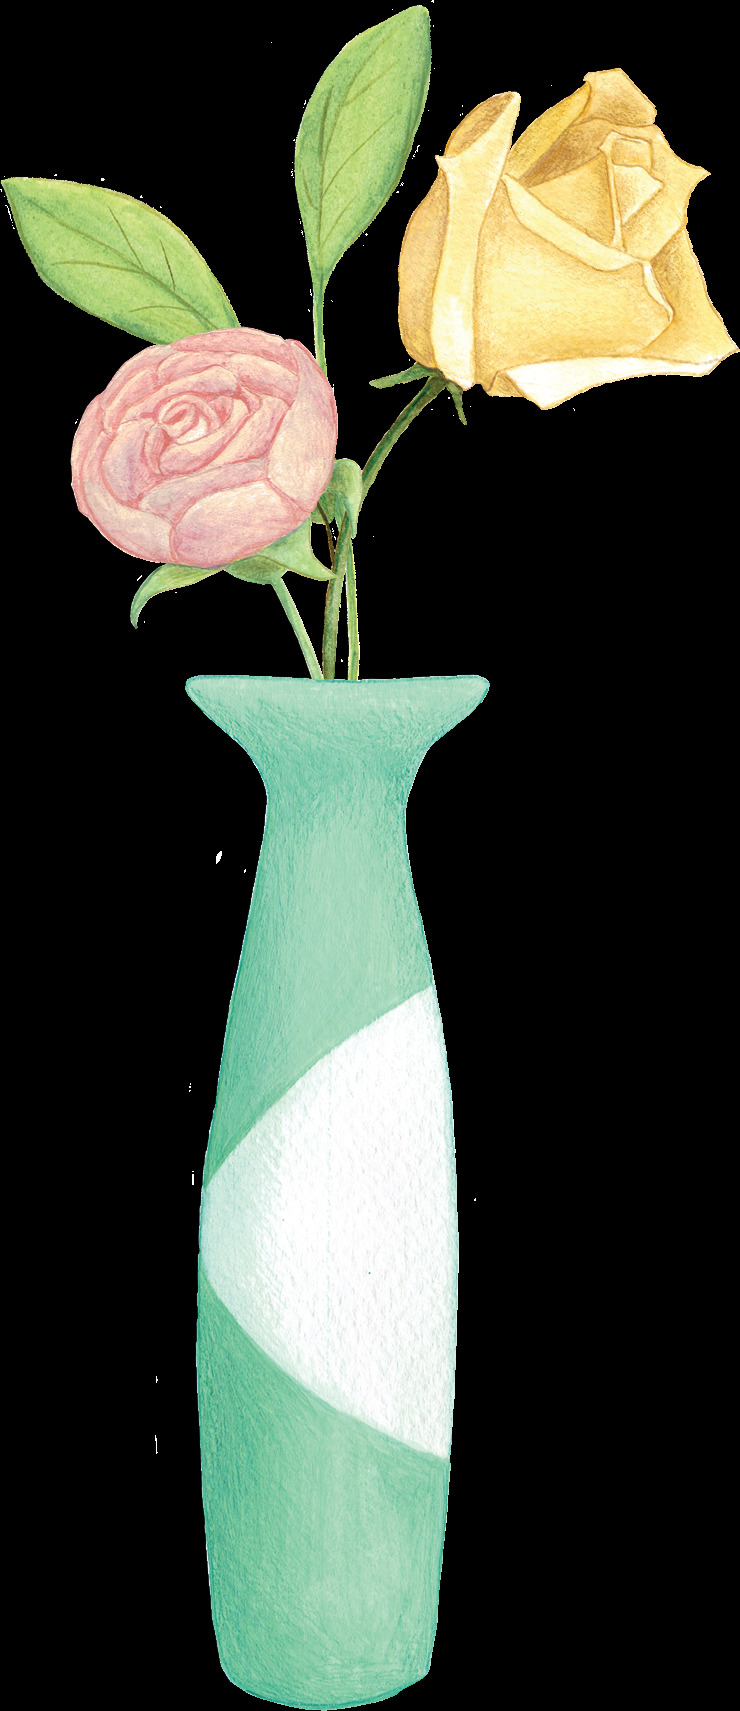 彩 铅 手绘 花朵 植物 花朵植物 手绘花朵 彩铅 彩铅植物 手绘插画 唯美 花卉花朵 手绘植物 花瓶